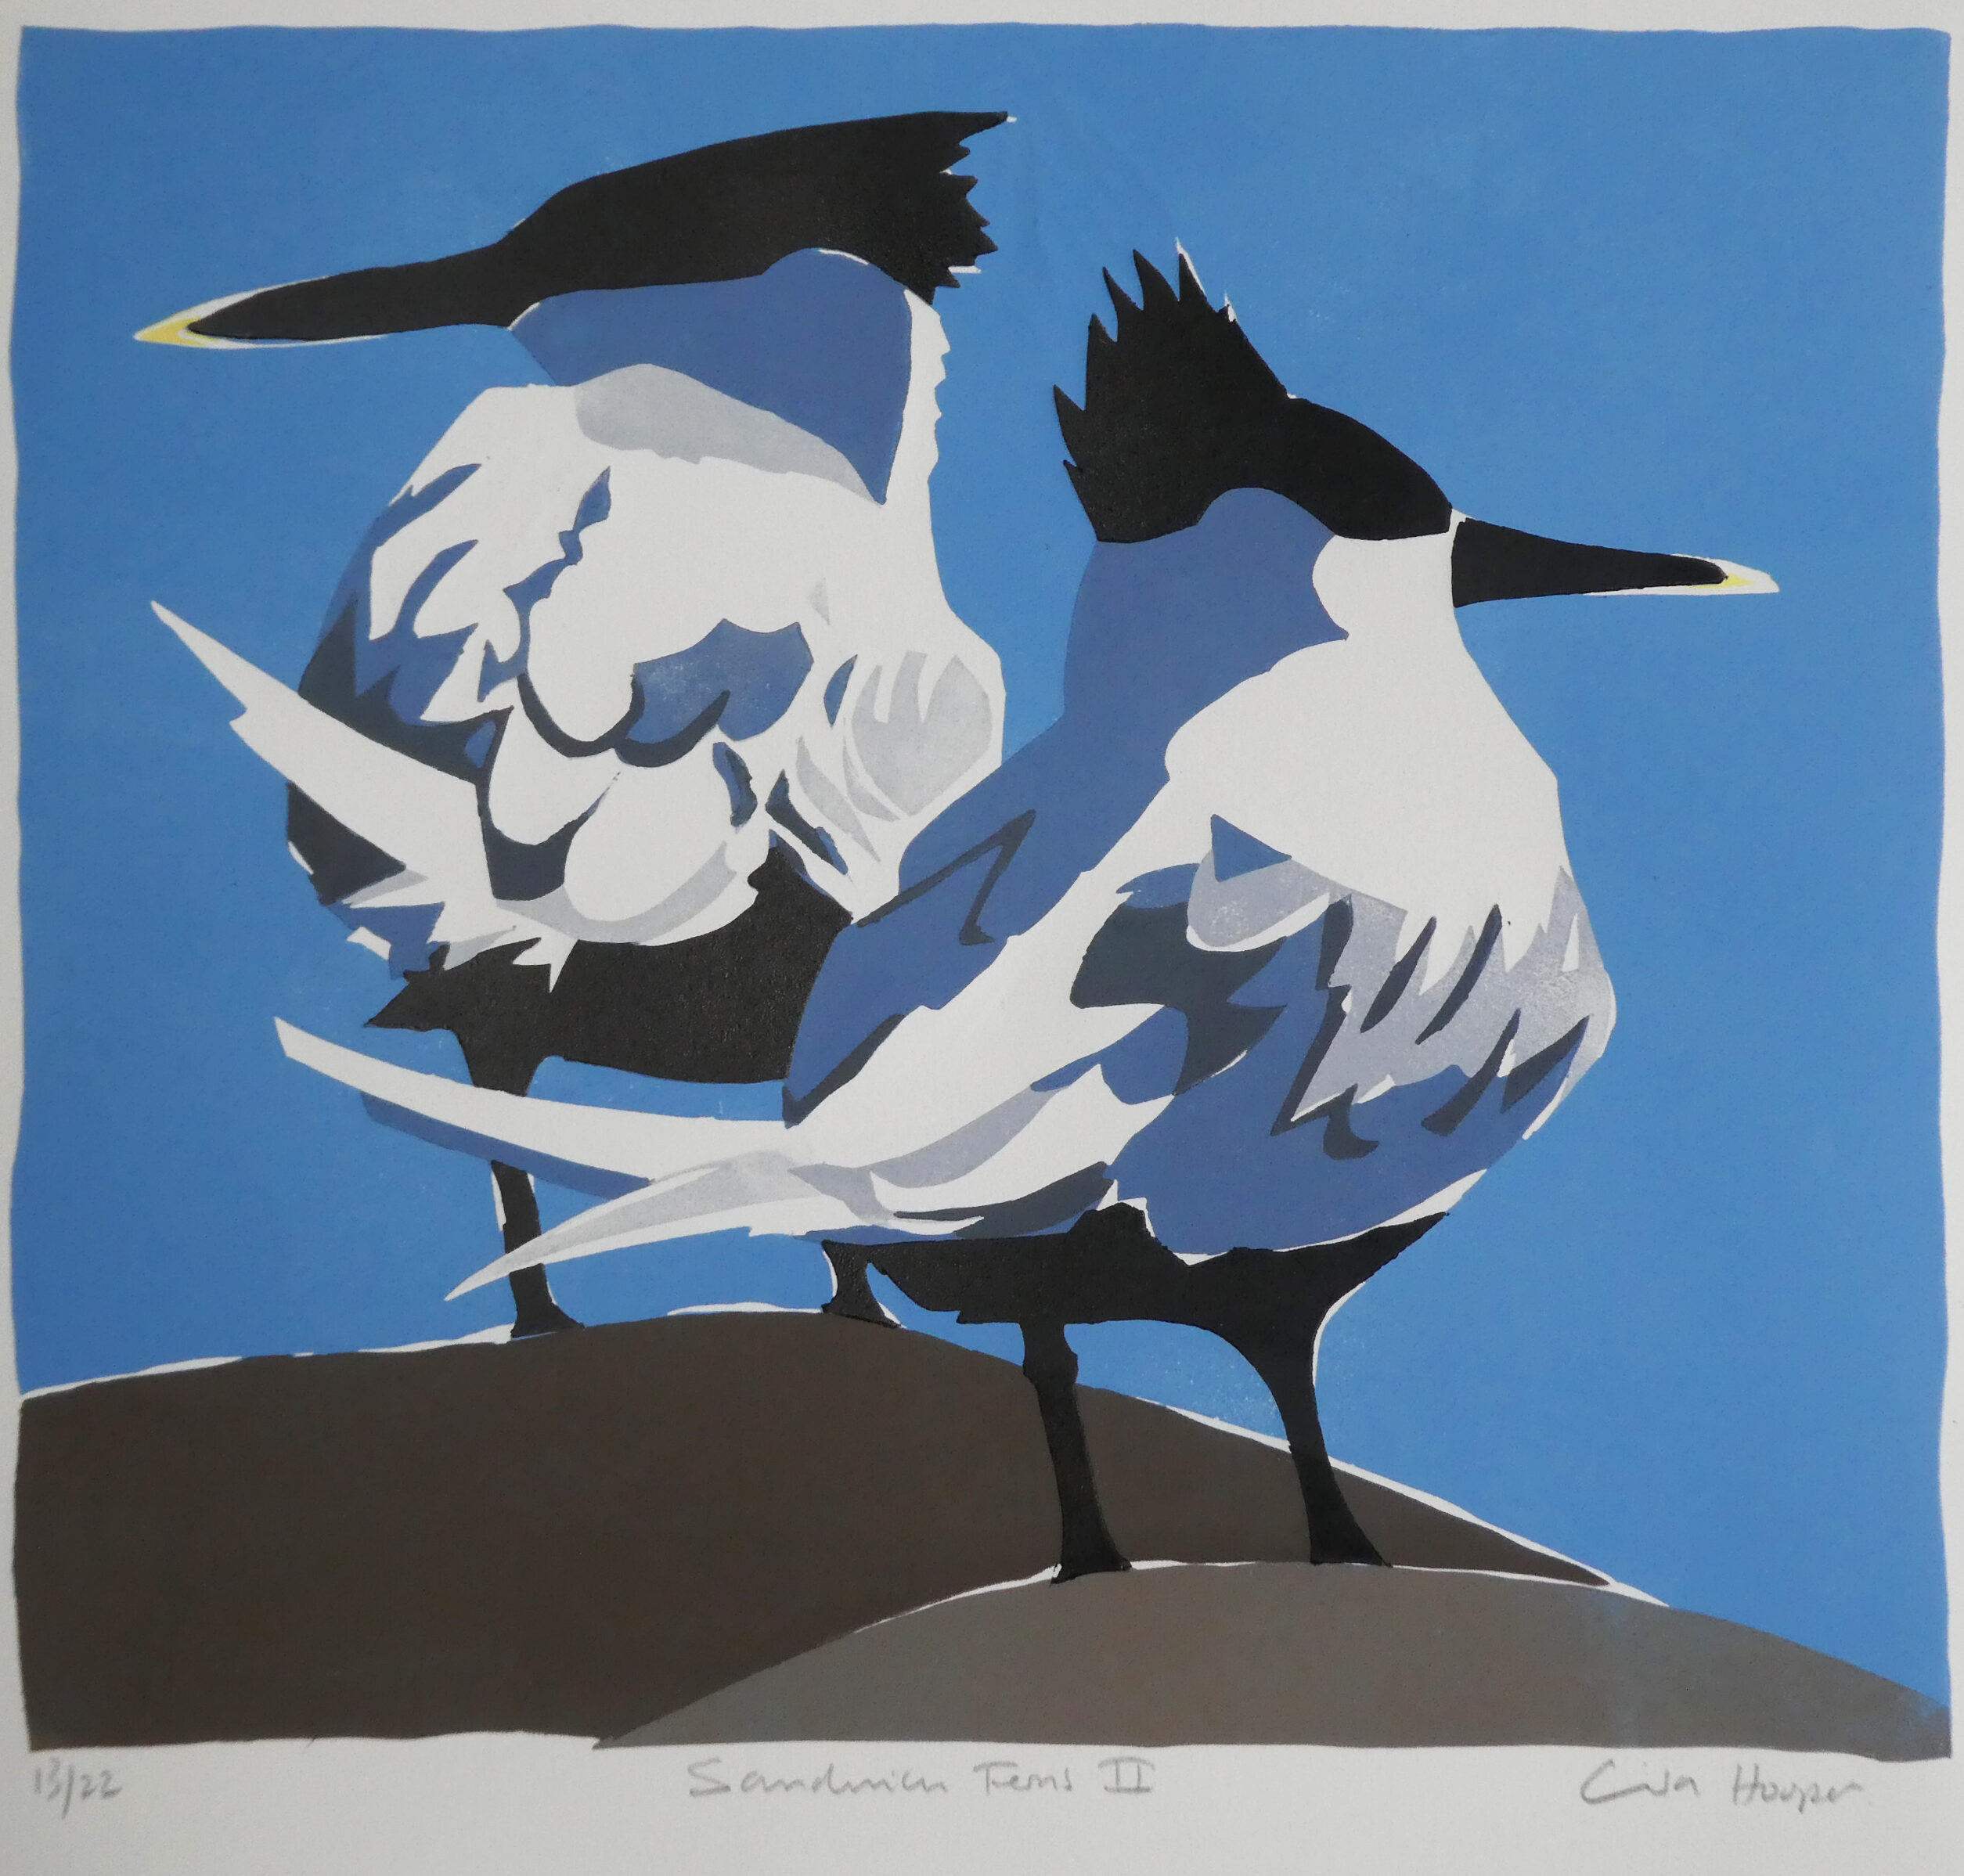 <p>Sandwich Terns II by Lisa Hooper</p>